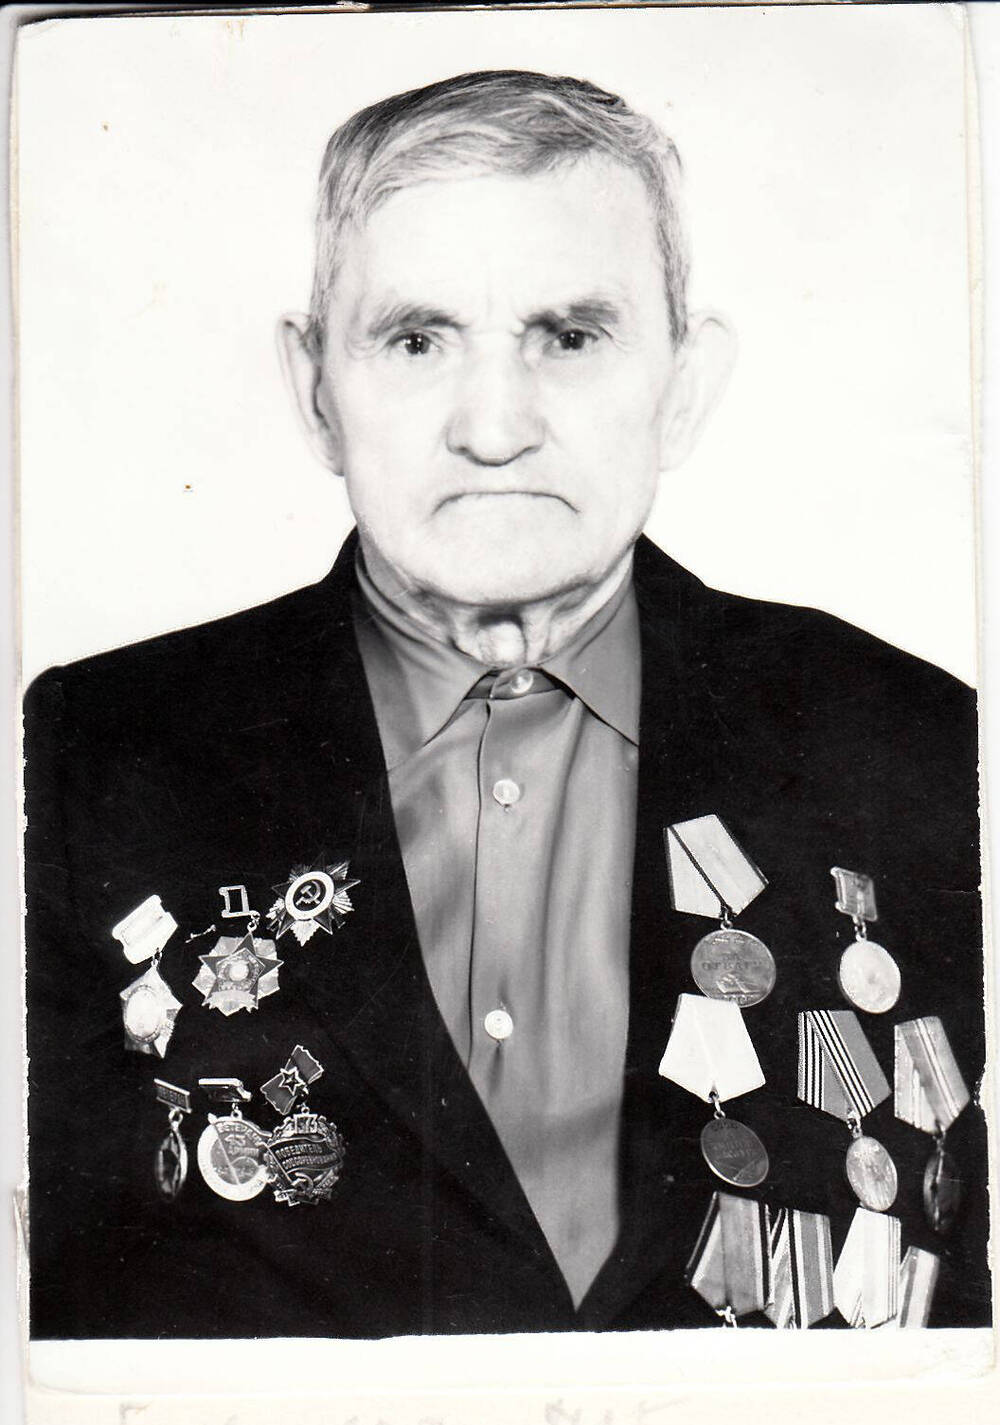 Фото ч/б погрудный участника
Великой Отечественной Войны
Болванова Г.Т., май 1973 г.